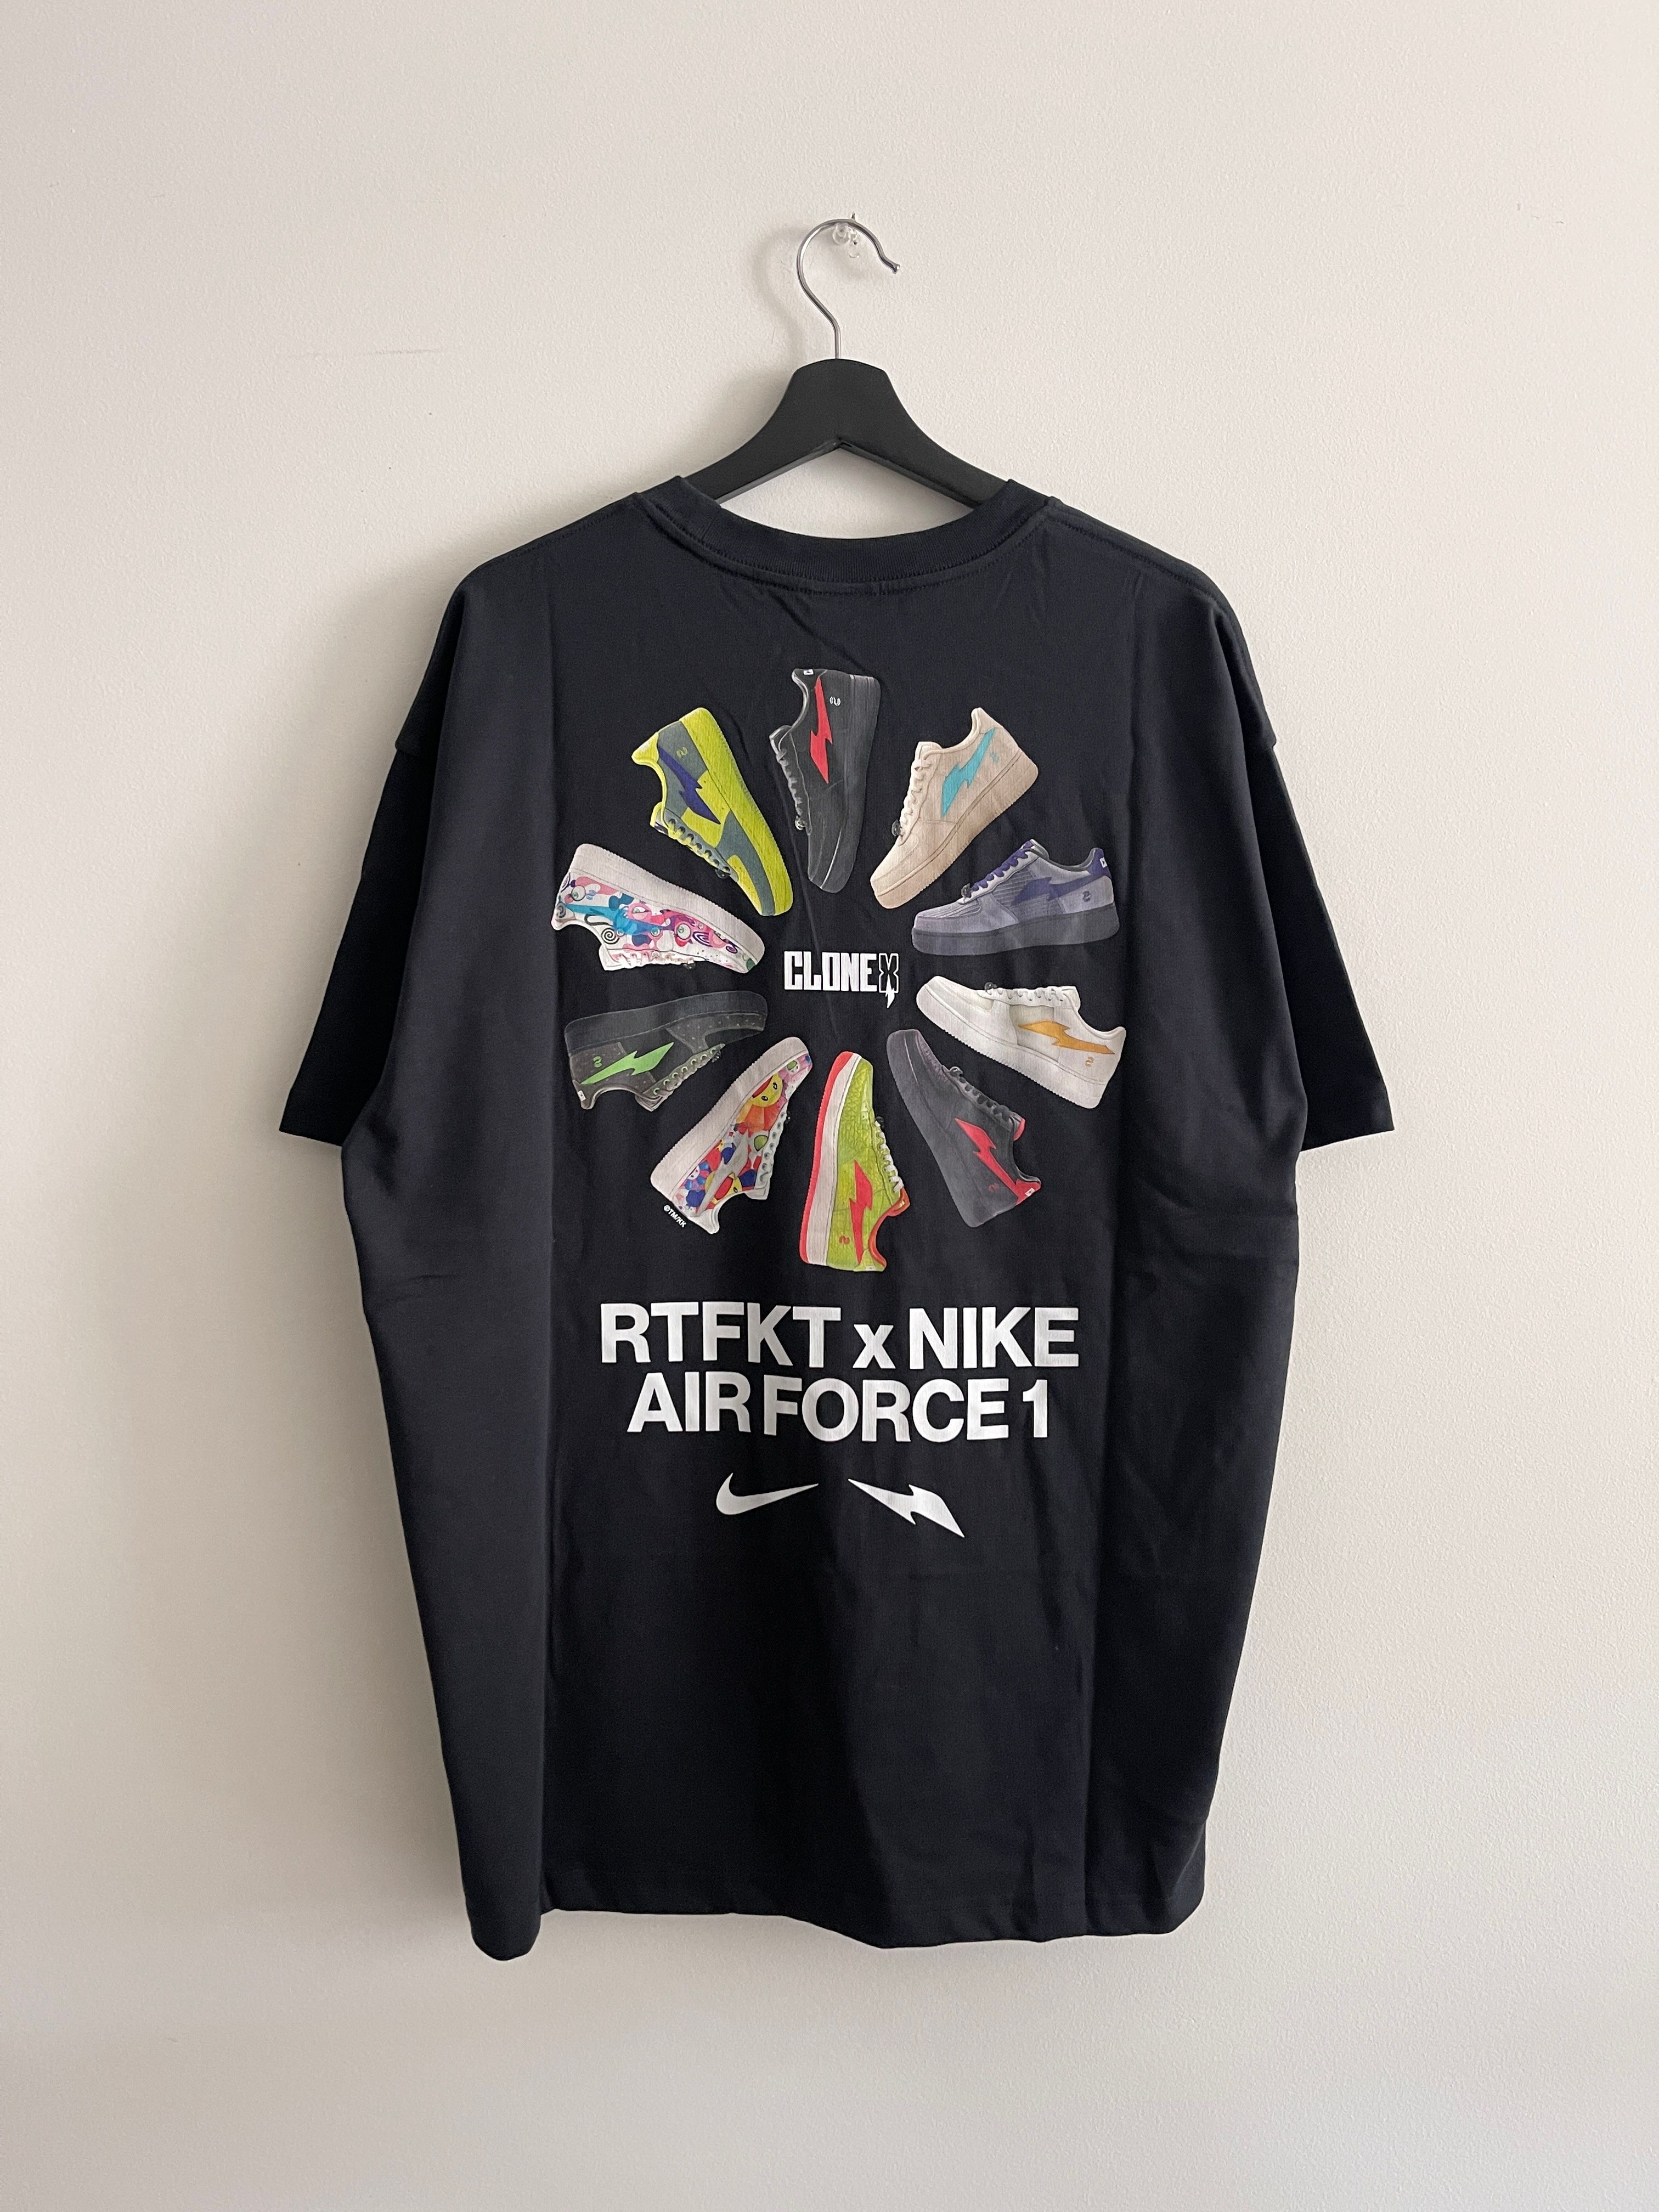 Takashi Murakami x Nike x RTFKT Air Force 1 Rotations Tee - 1